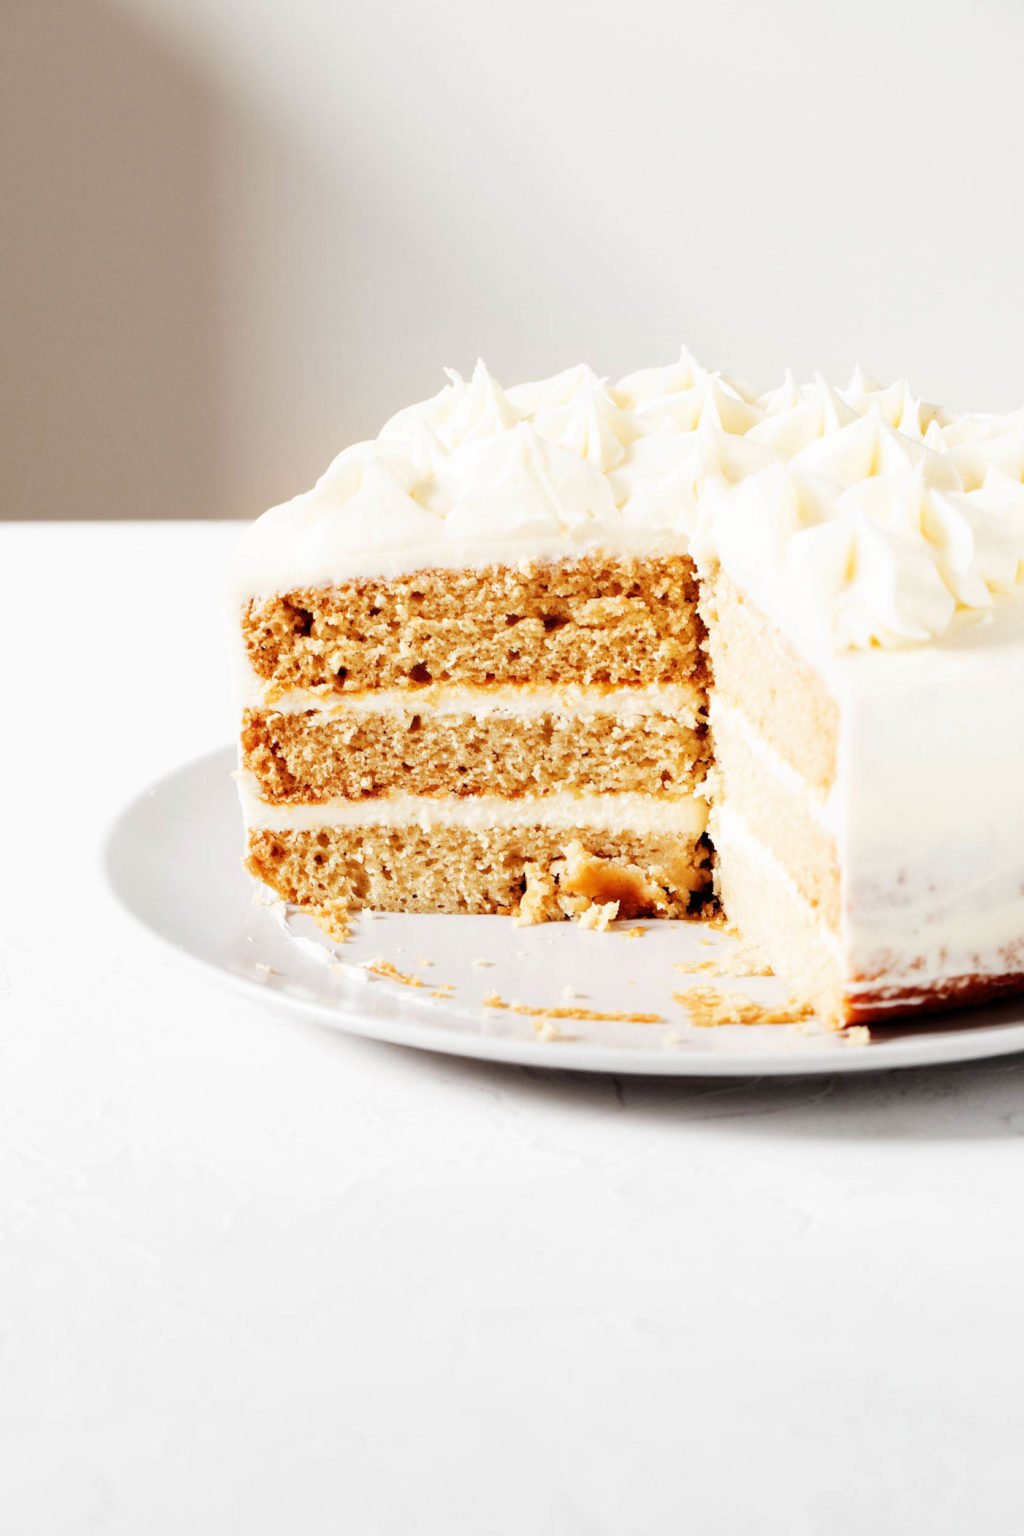 Üç katlı vanilyalı kek yuvarlak bir tabağa oturur.  Pasta dilimlenmiş ve beyaz kremalı krema ile süslenmiştir.